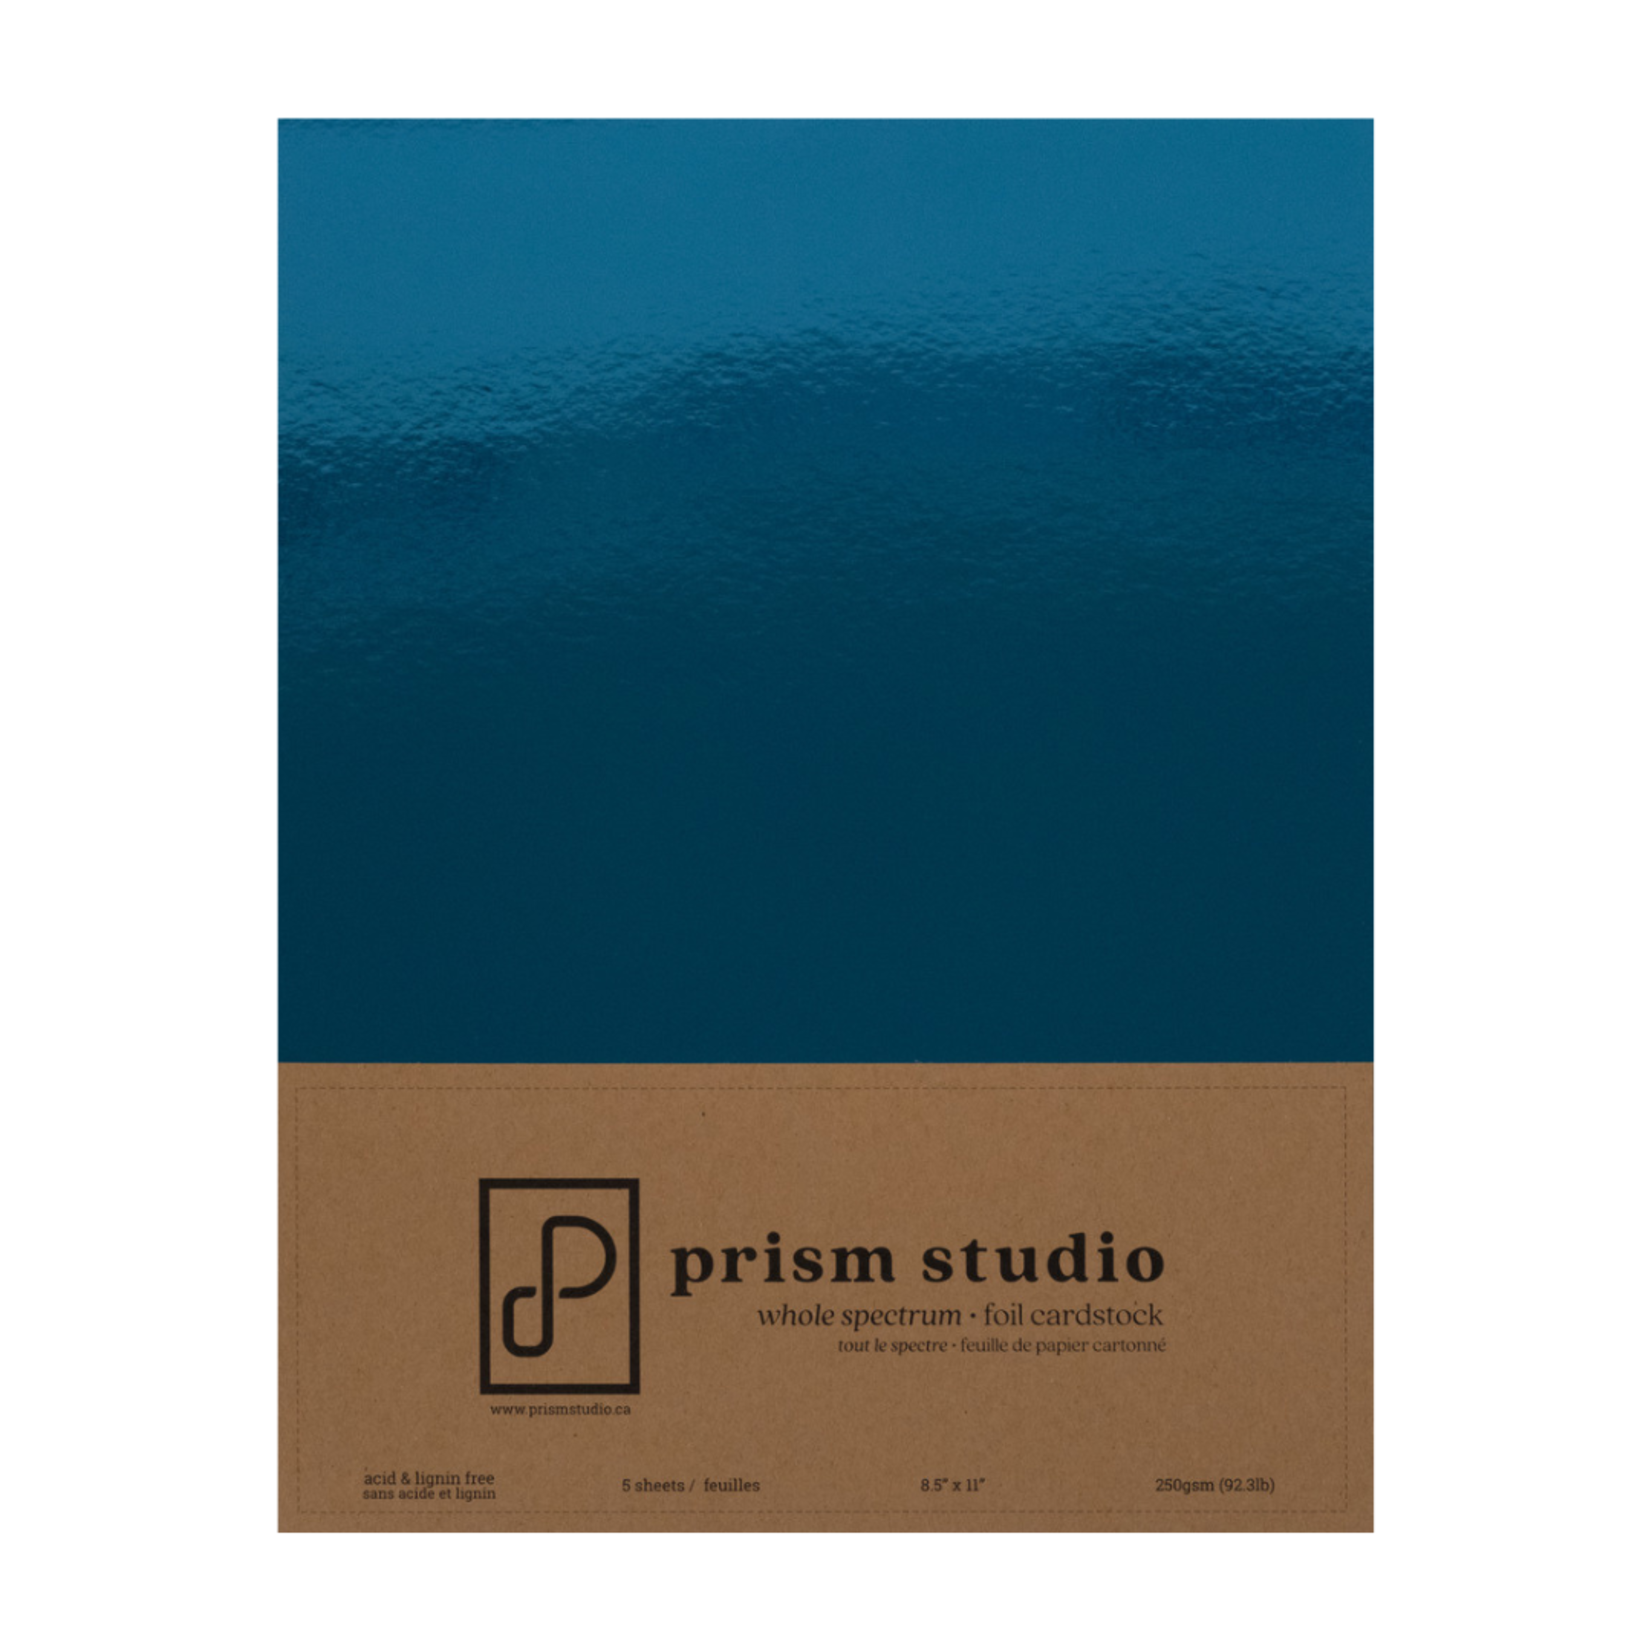 PRISM STUDIO PRISM STUDIO WHOLE SPECTRUM FOIL CARDSTOCK 8.5X11 AQUAMARINE